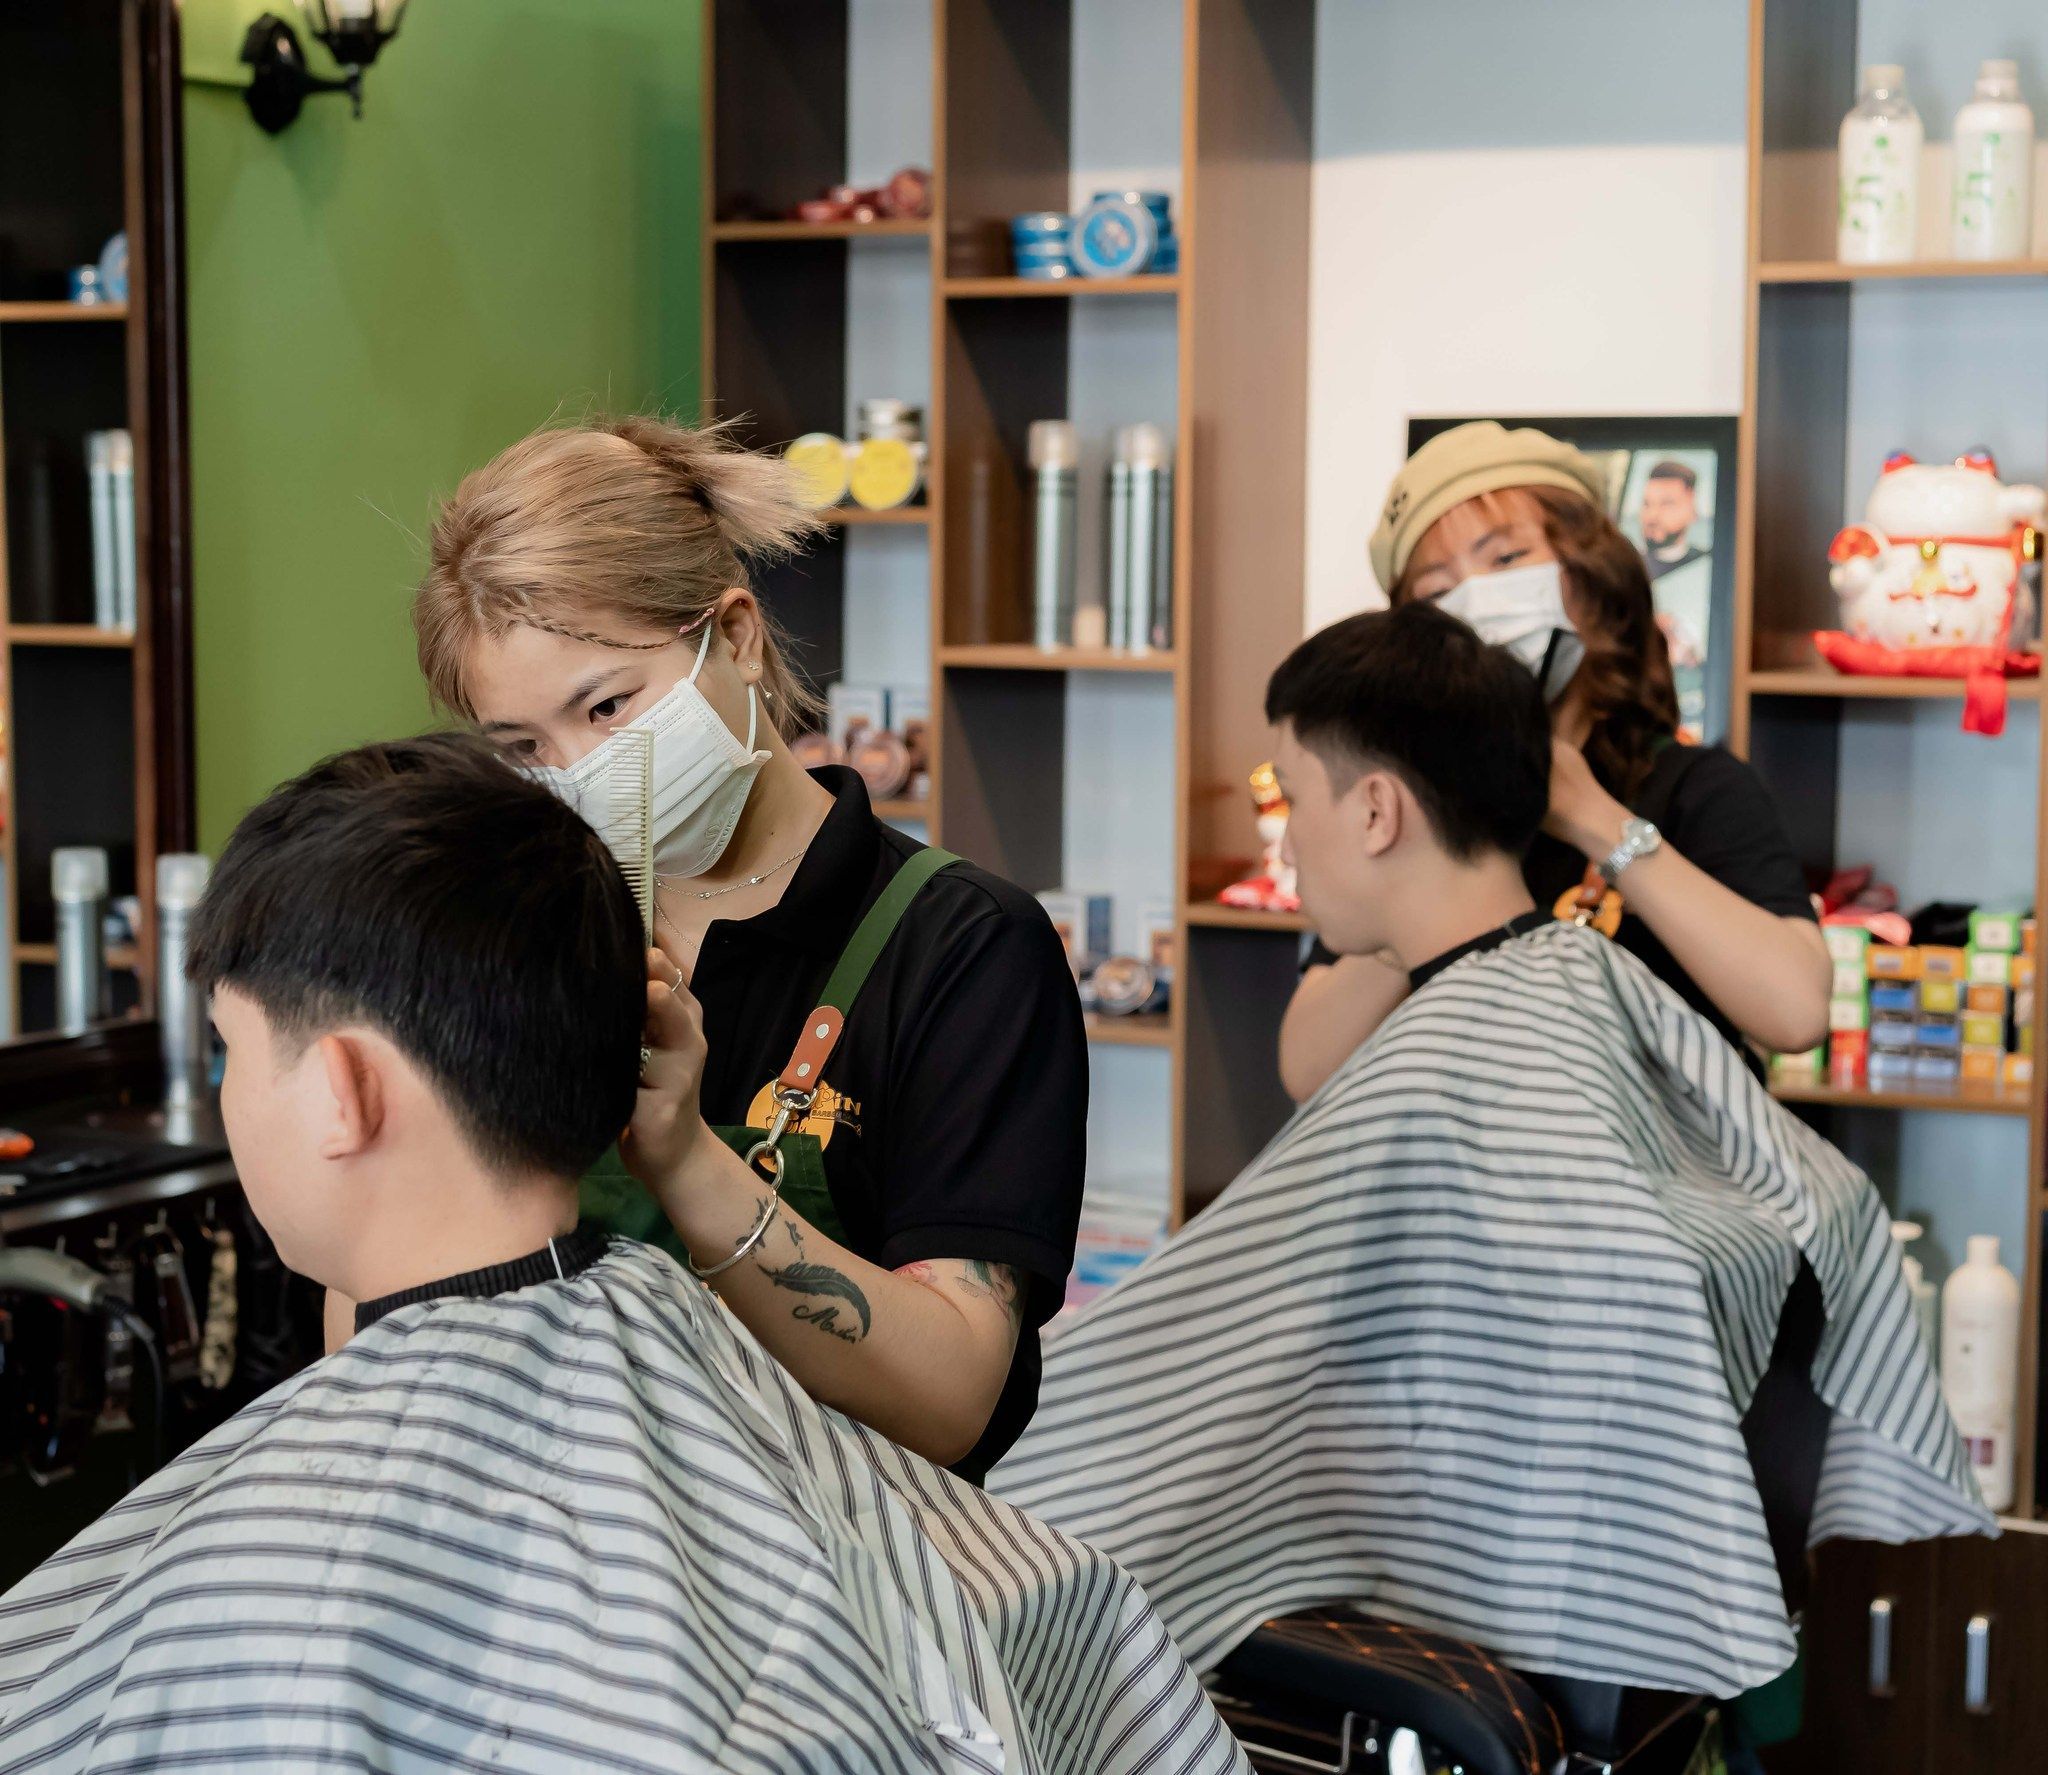 Làm tóc nam Thanh Xuân sẽ giúp bạn trở nên năng động và sáng tạo hơn. Những kiểu tóc độc đáo và phong cách đầy cá tính sẽ giúp bạn nổi bật hơn trong đám đông. Hãy đến địa chỉ của chúng tôi và trải nghiệm cảm giác thú vị này.